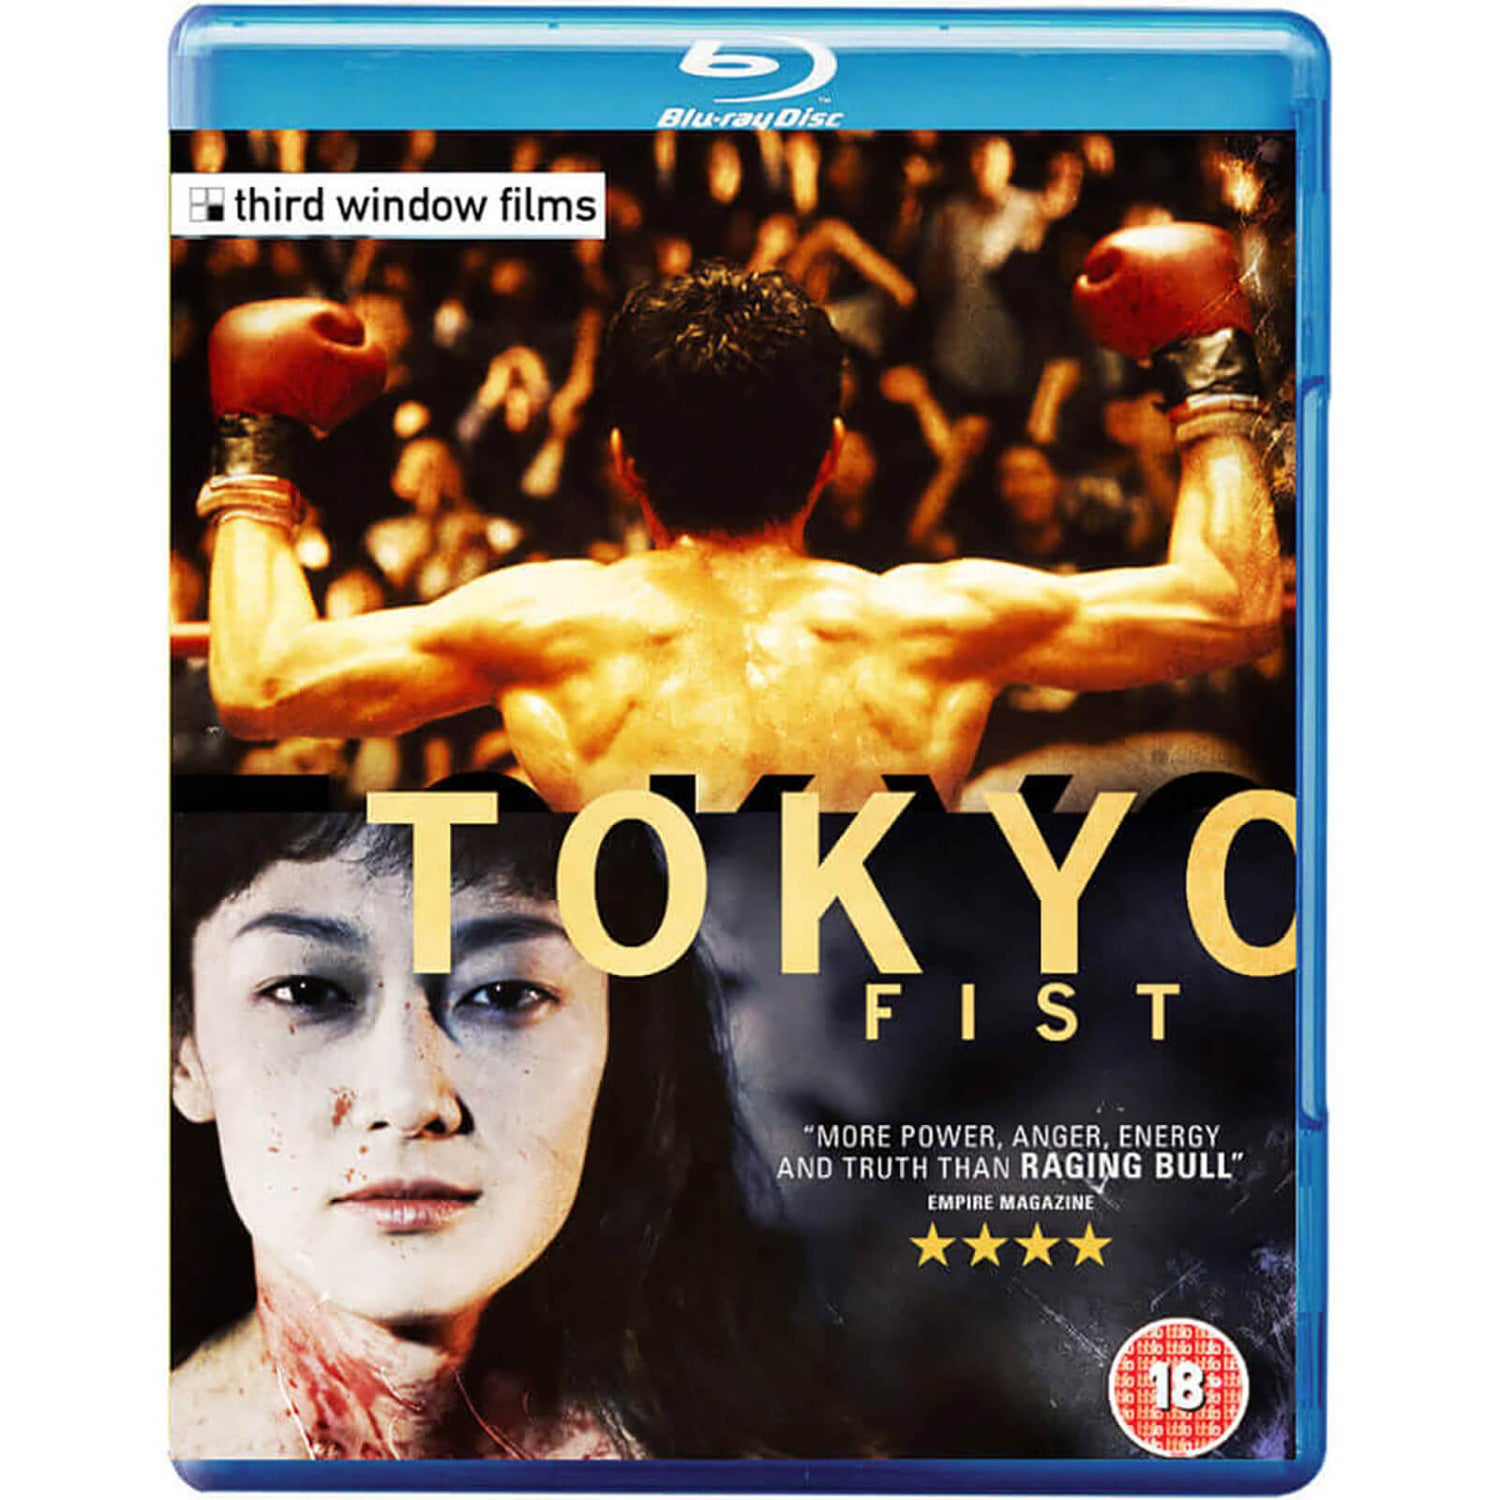 Tokyo Fist Blu-ray